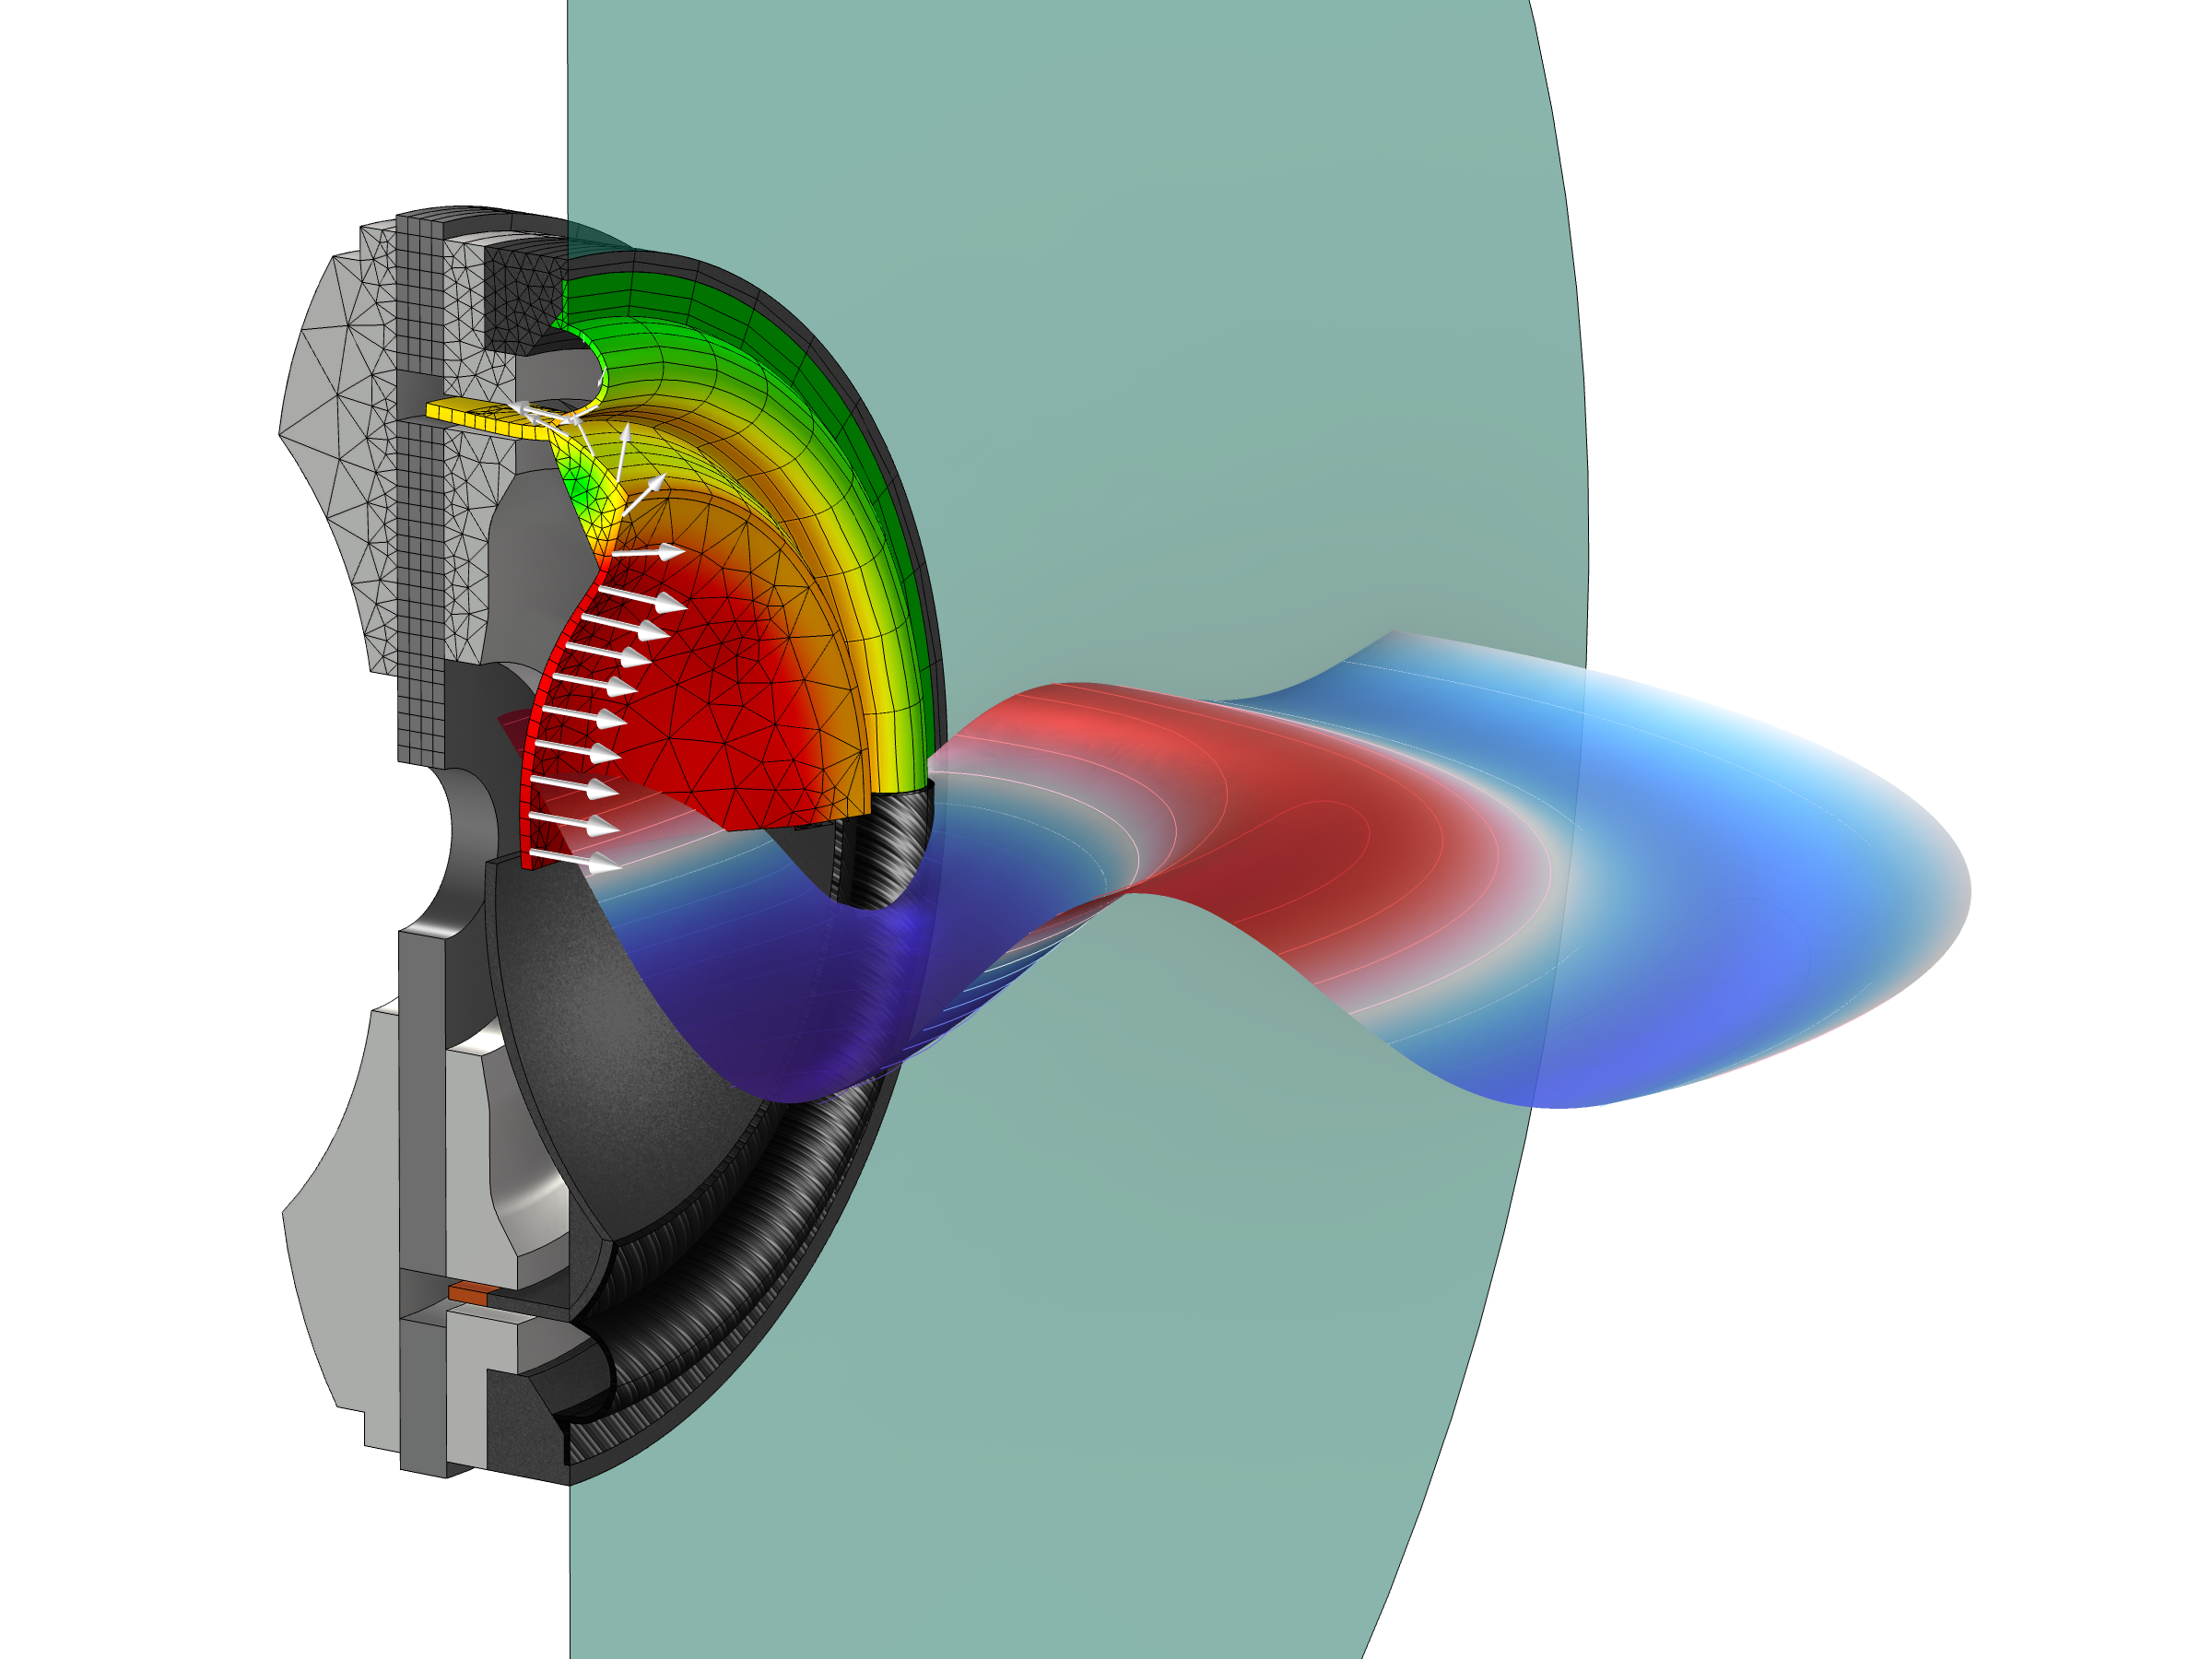 Querschnitt und Simulation eines elektrodynamischen Breitbandlautsprechers